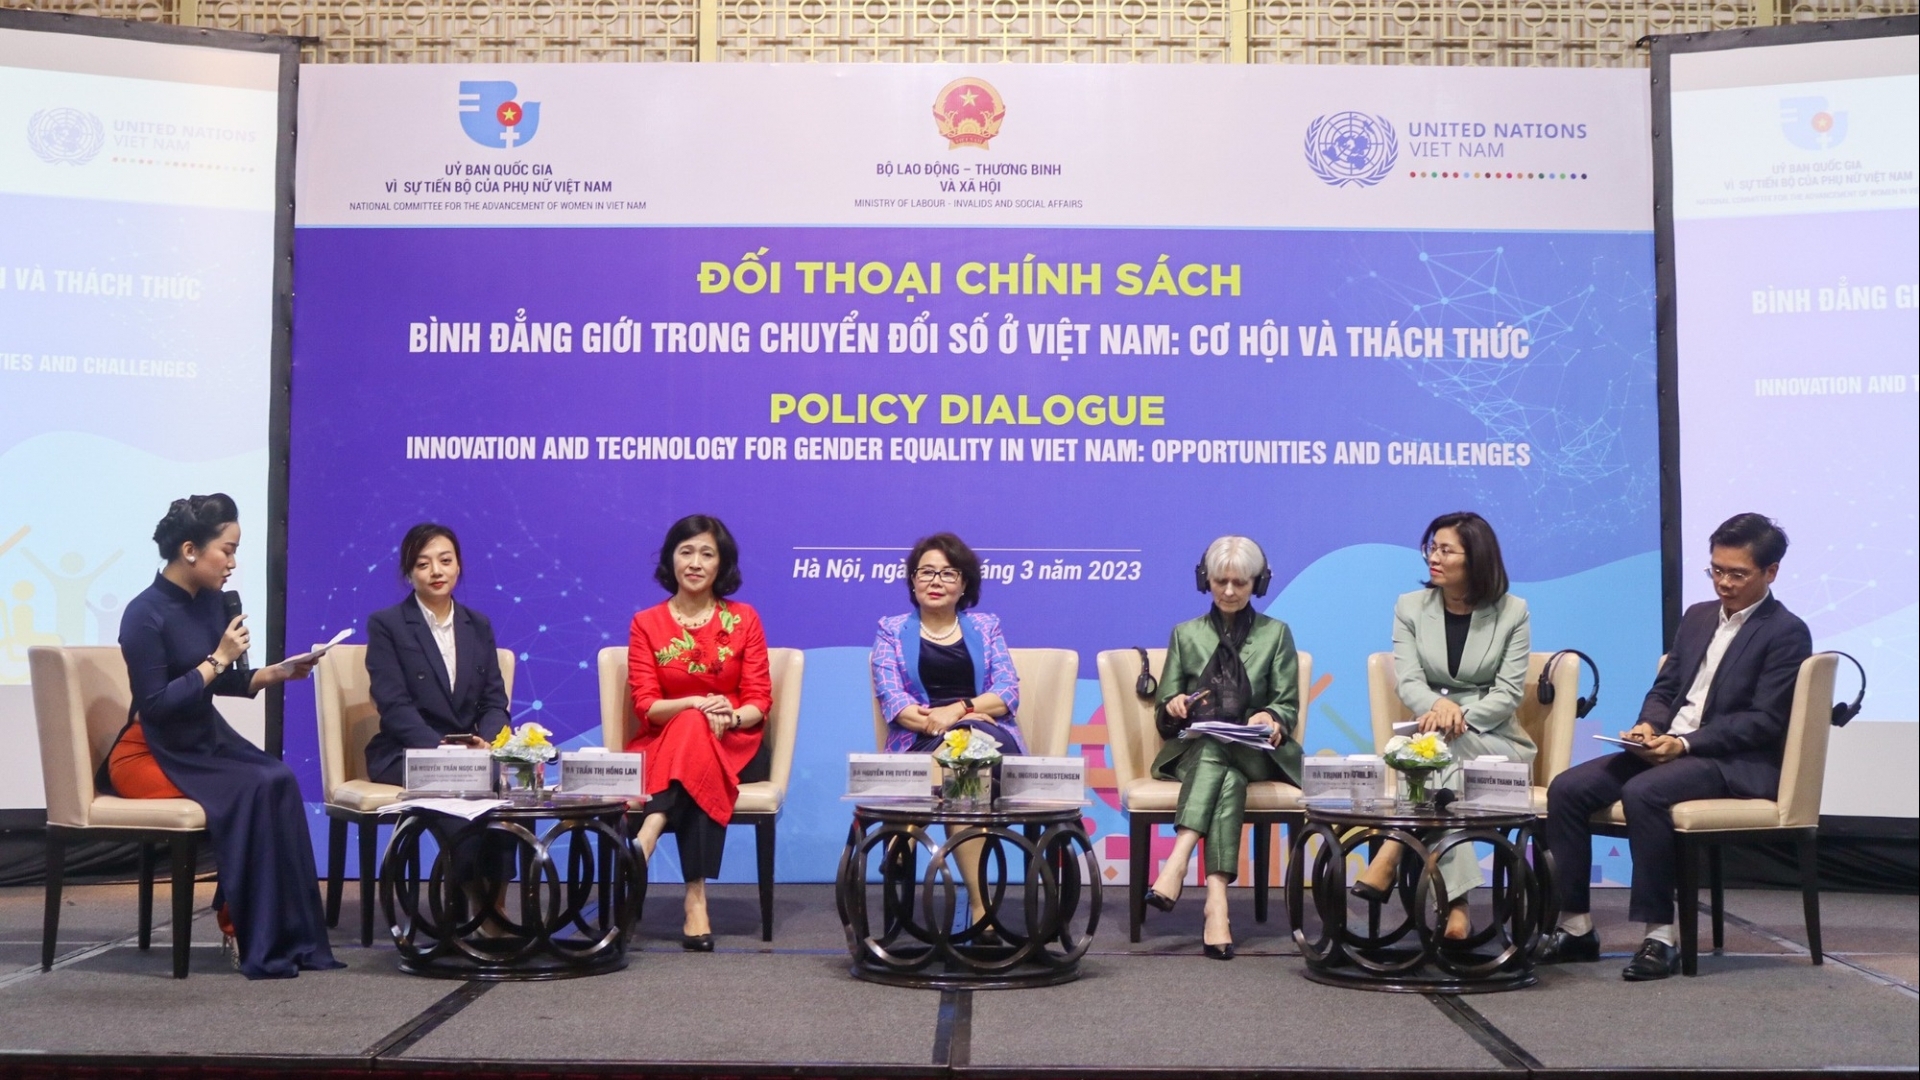 在越南的数字化转型过程中为女性创造机会